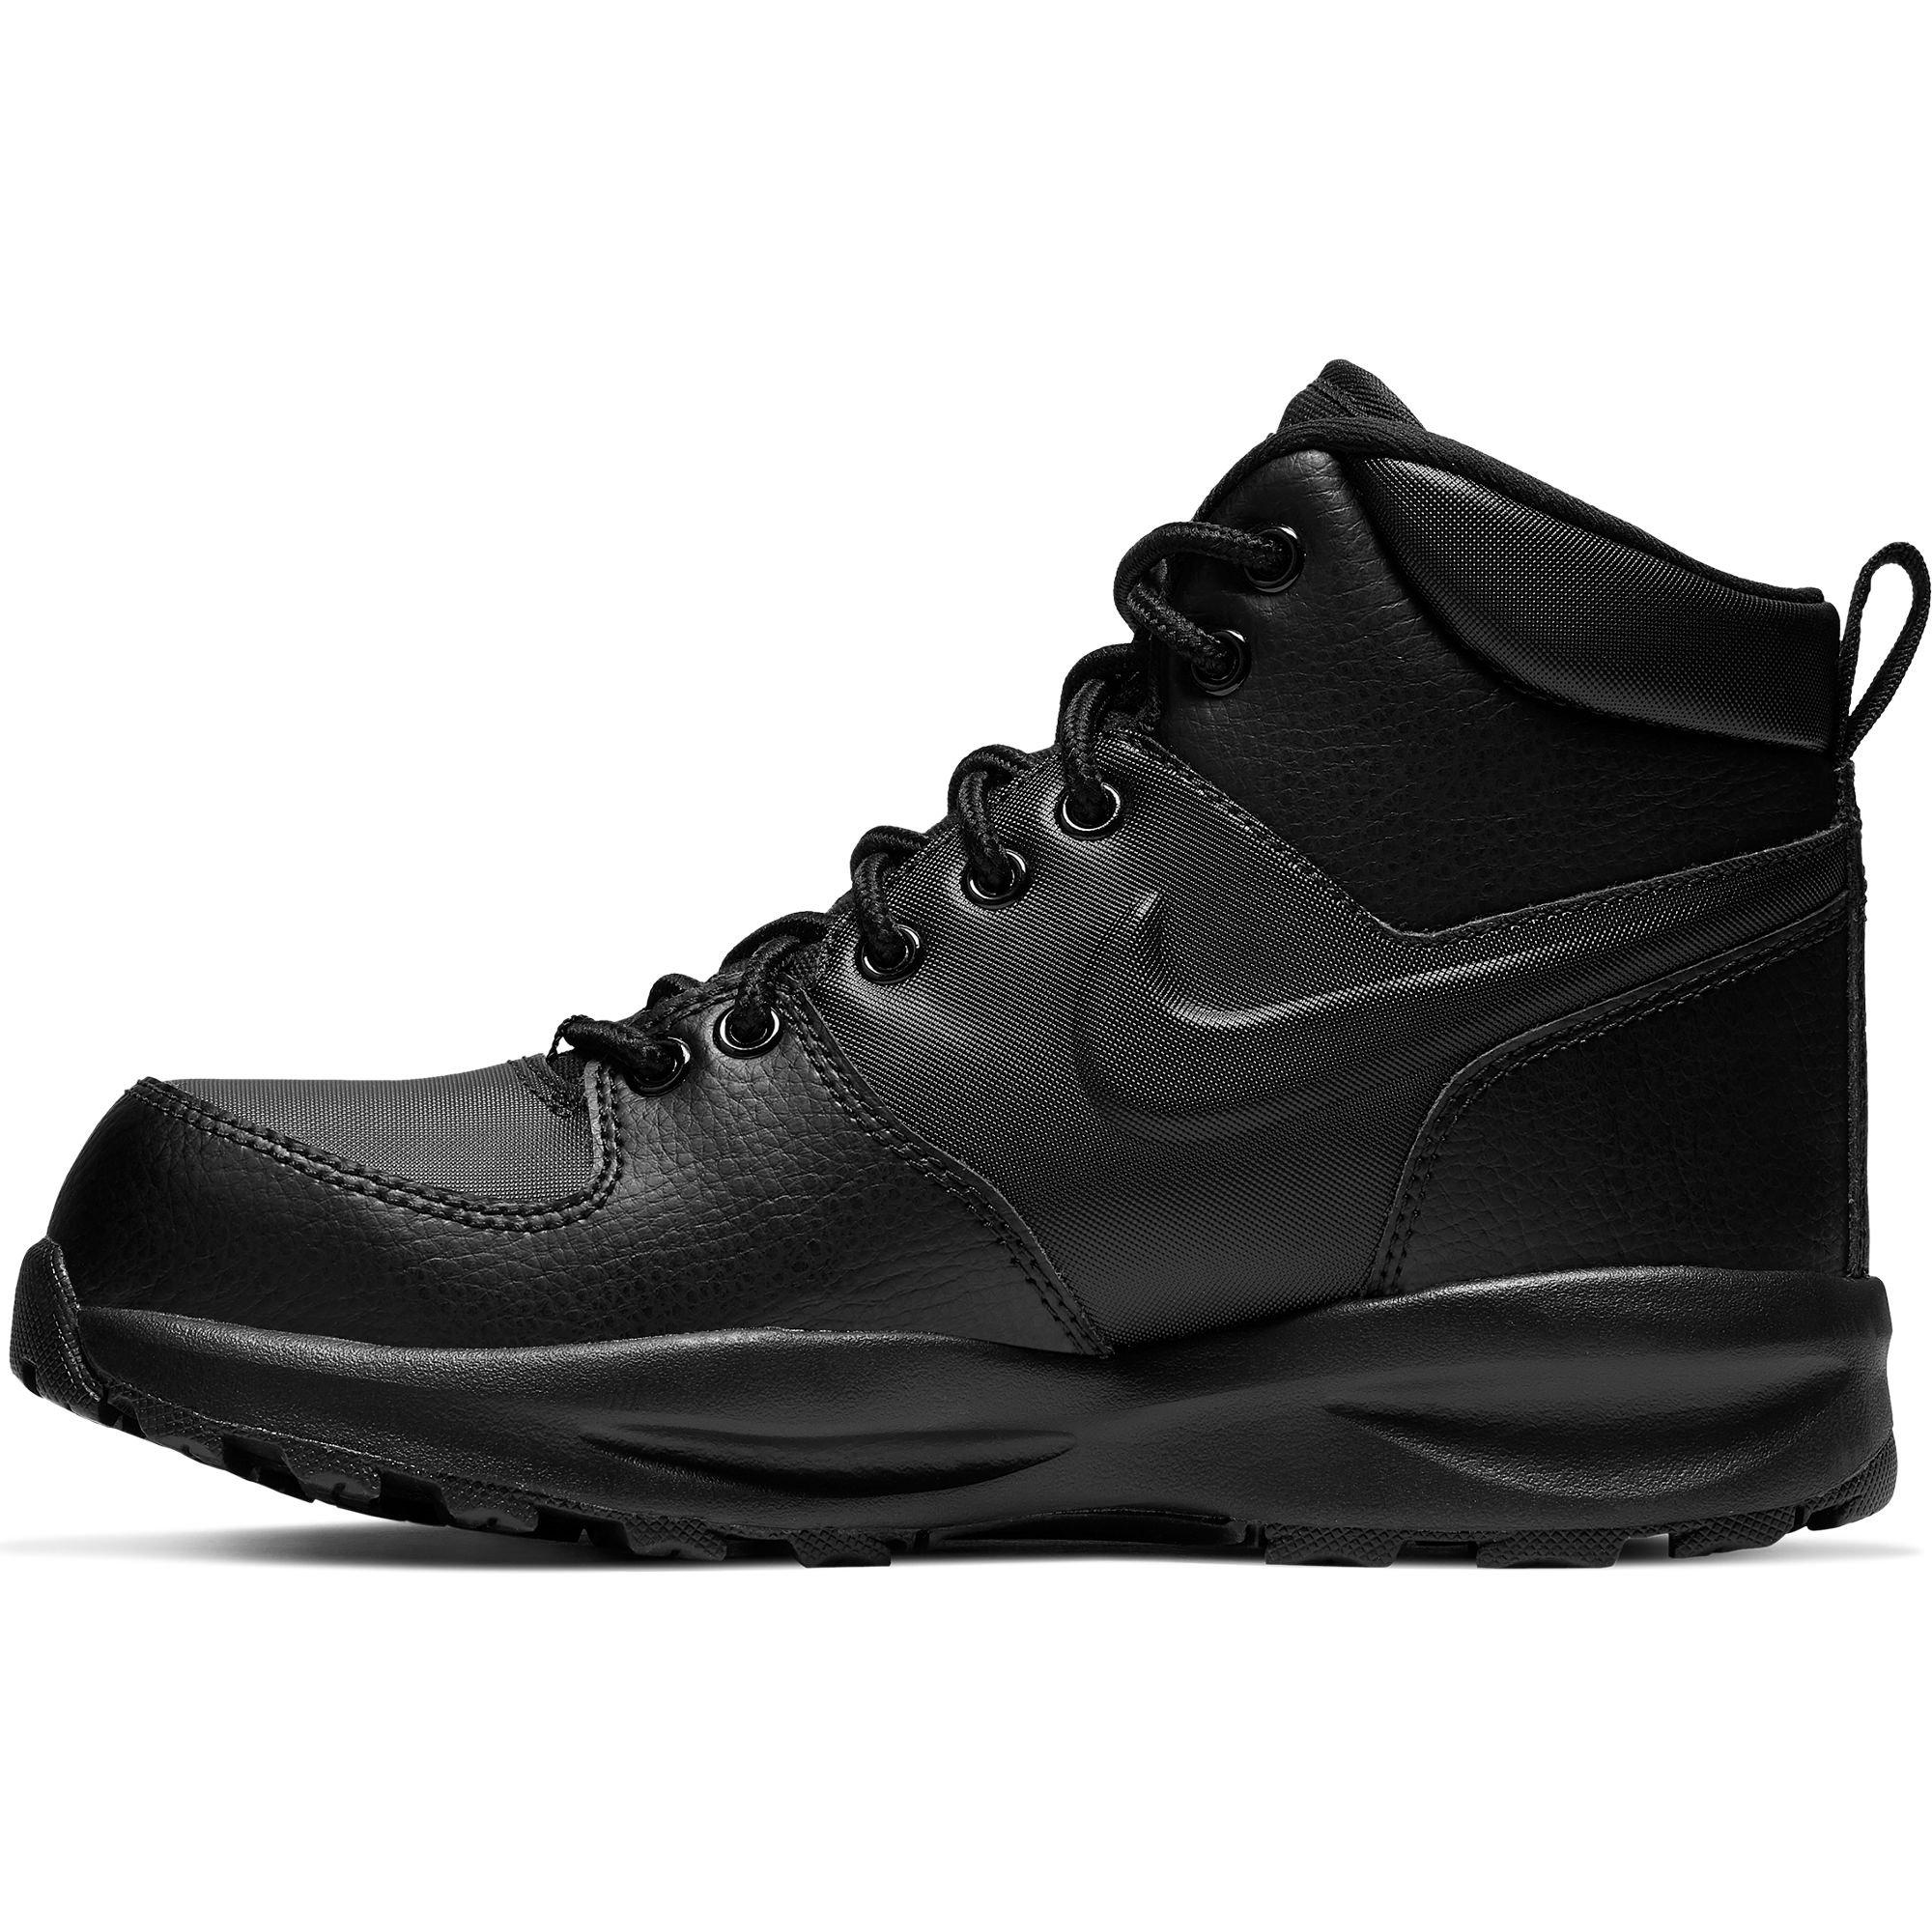 Осенние найк мужские. Nike Manoa Leather. Ботинки Nike Manoa Leather. Ботинки Nike Manoa Leather 454350-003. Nike Manoa.